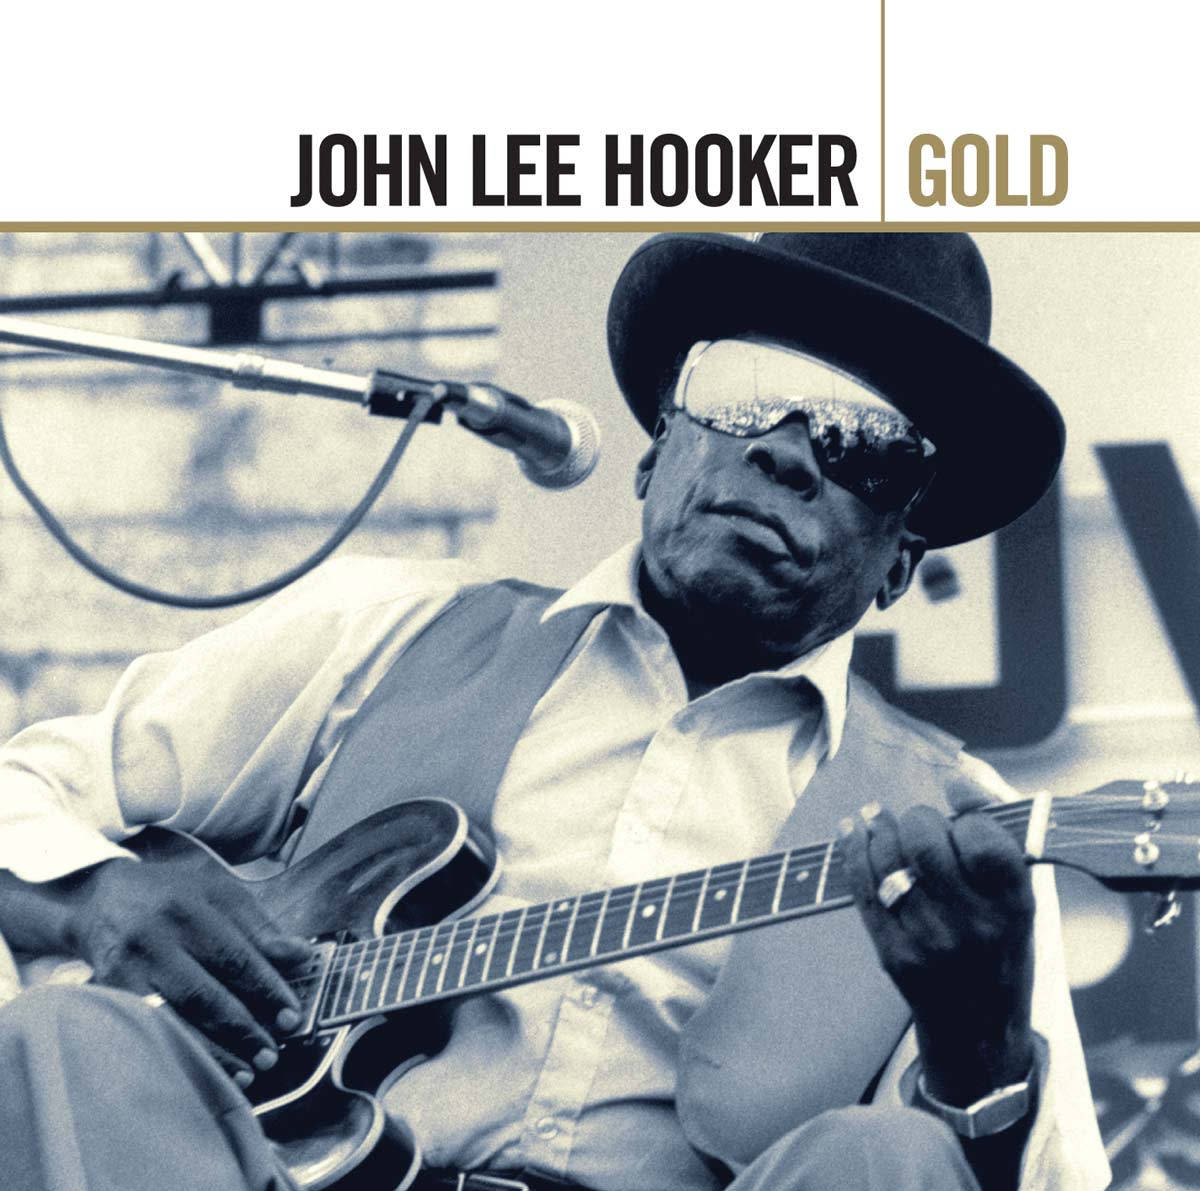 John Lee Hooker Gold Album Wallpaper